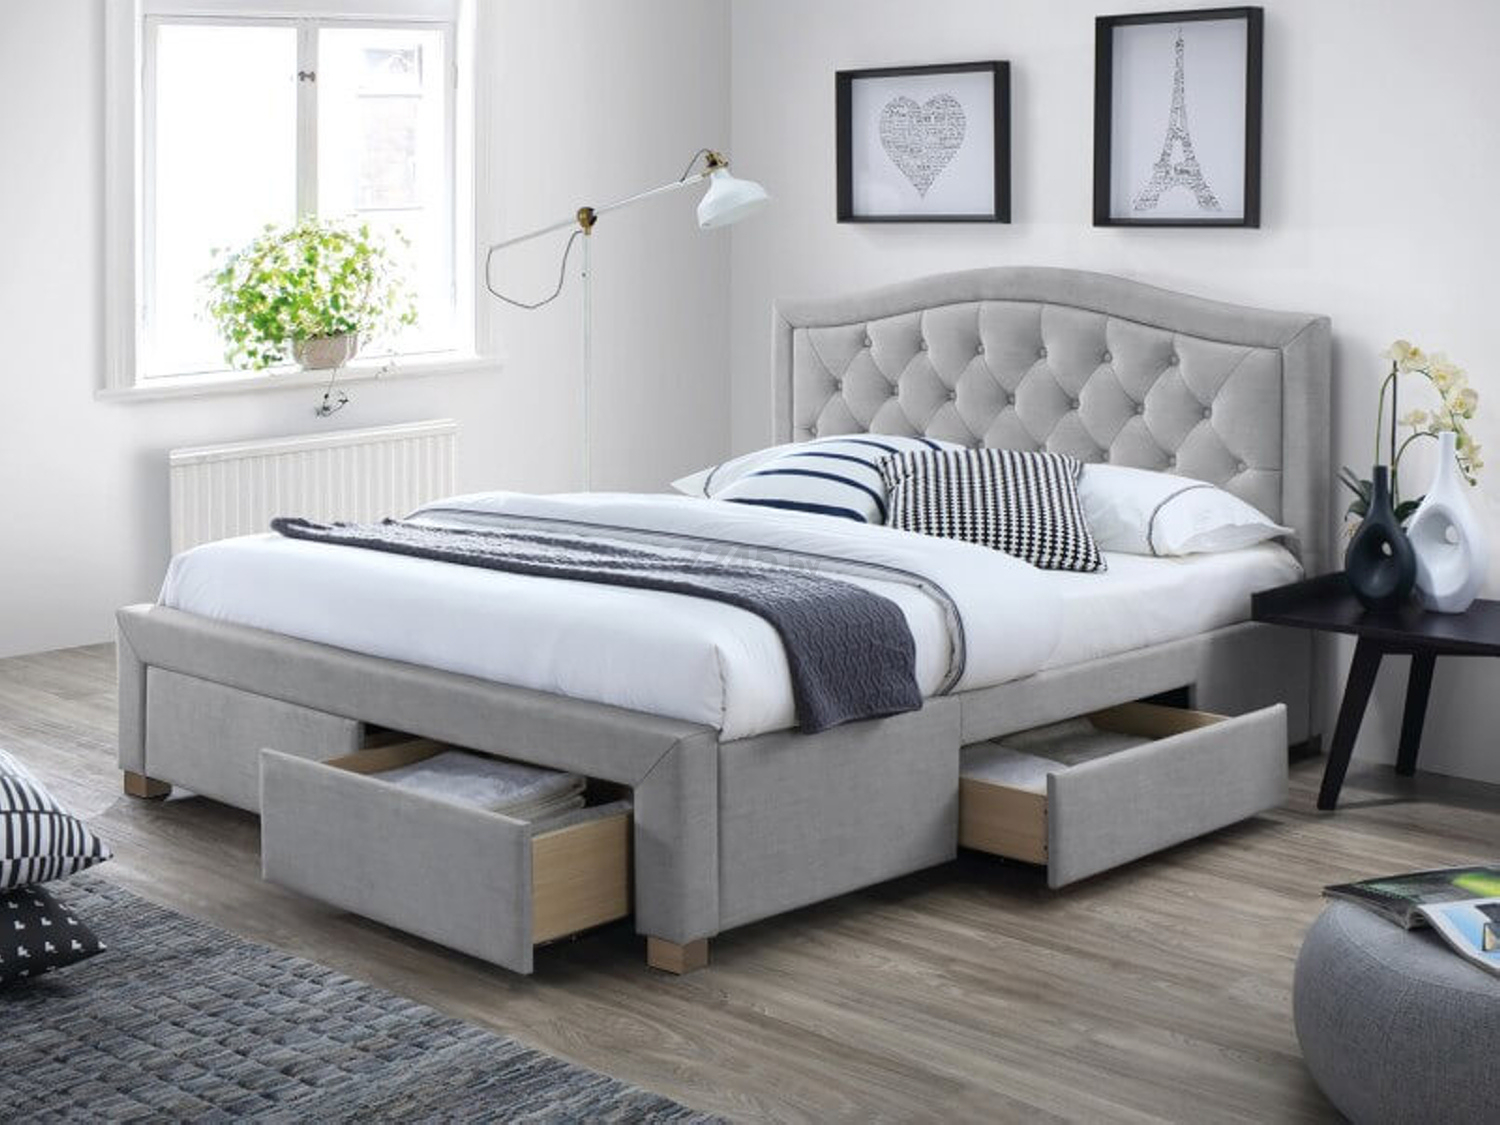 Кровать полуторная SIGNAL Electra Tap 76 серый/дуб 140х200 см (ELECTRA140SZD)